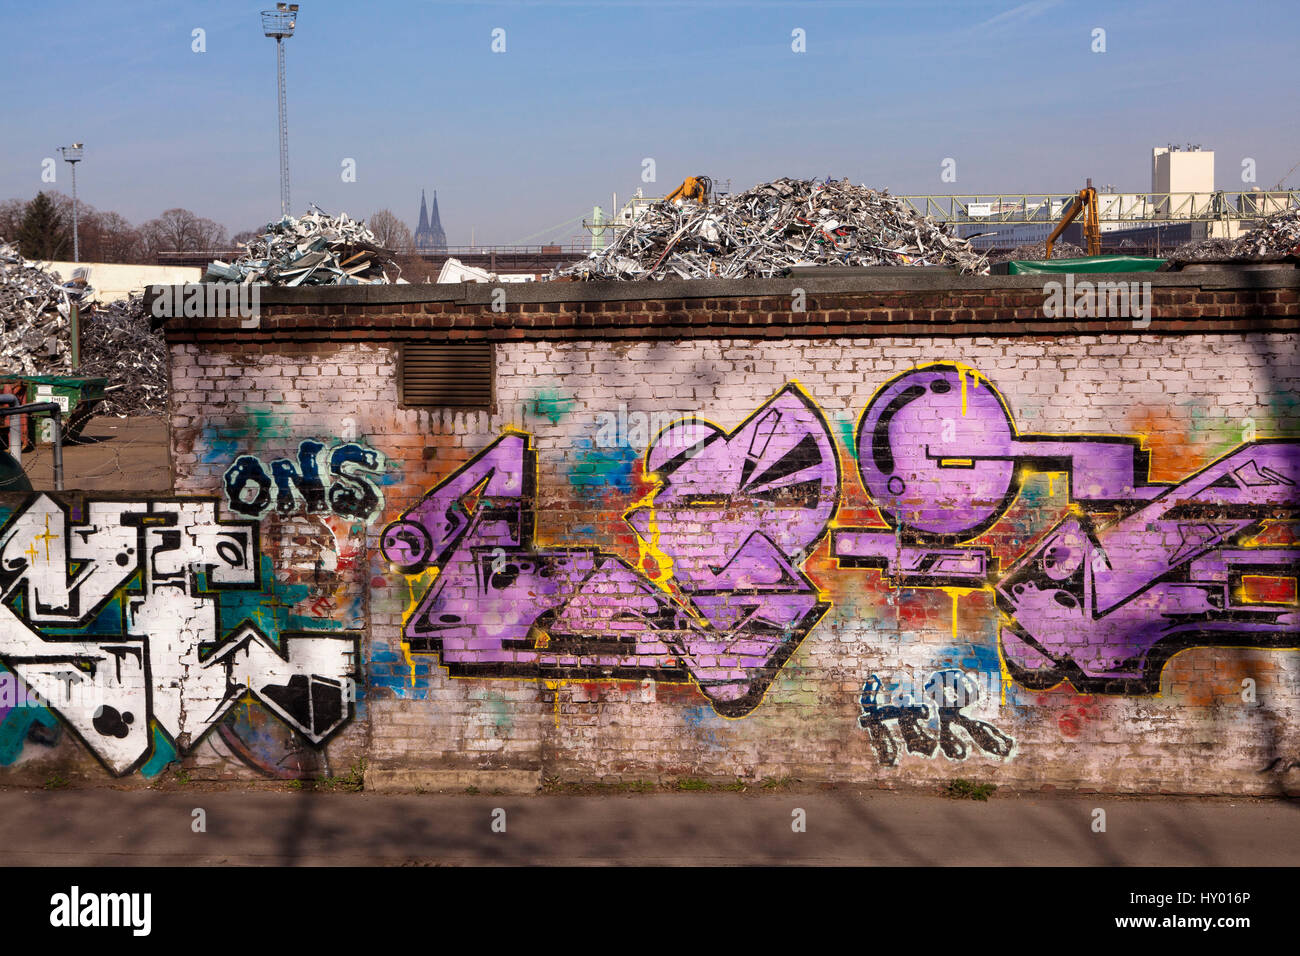 Germania, Colonia, rottami di cantiere con il vecchio metallo nel quartiere Deutz, sullo sfondo la cattedrale, a parete con graffiti. Foto Stock